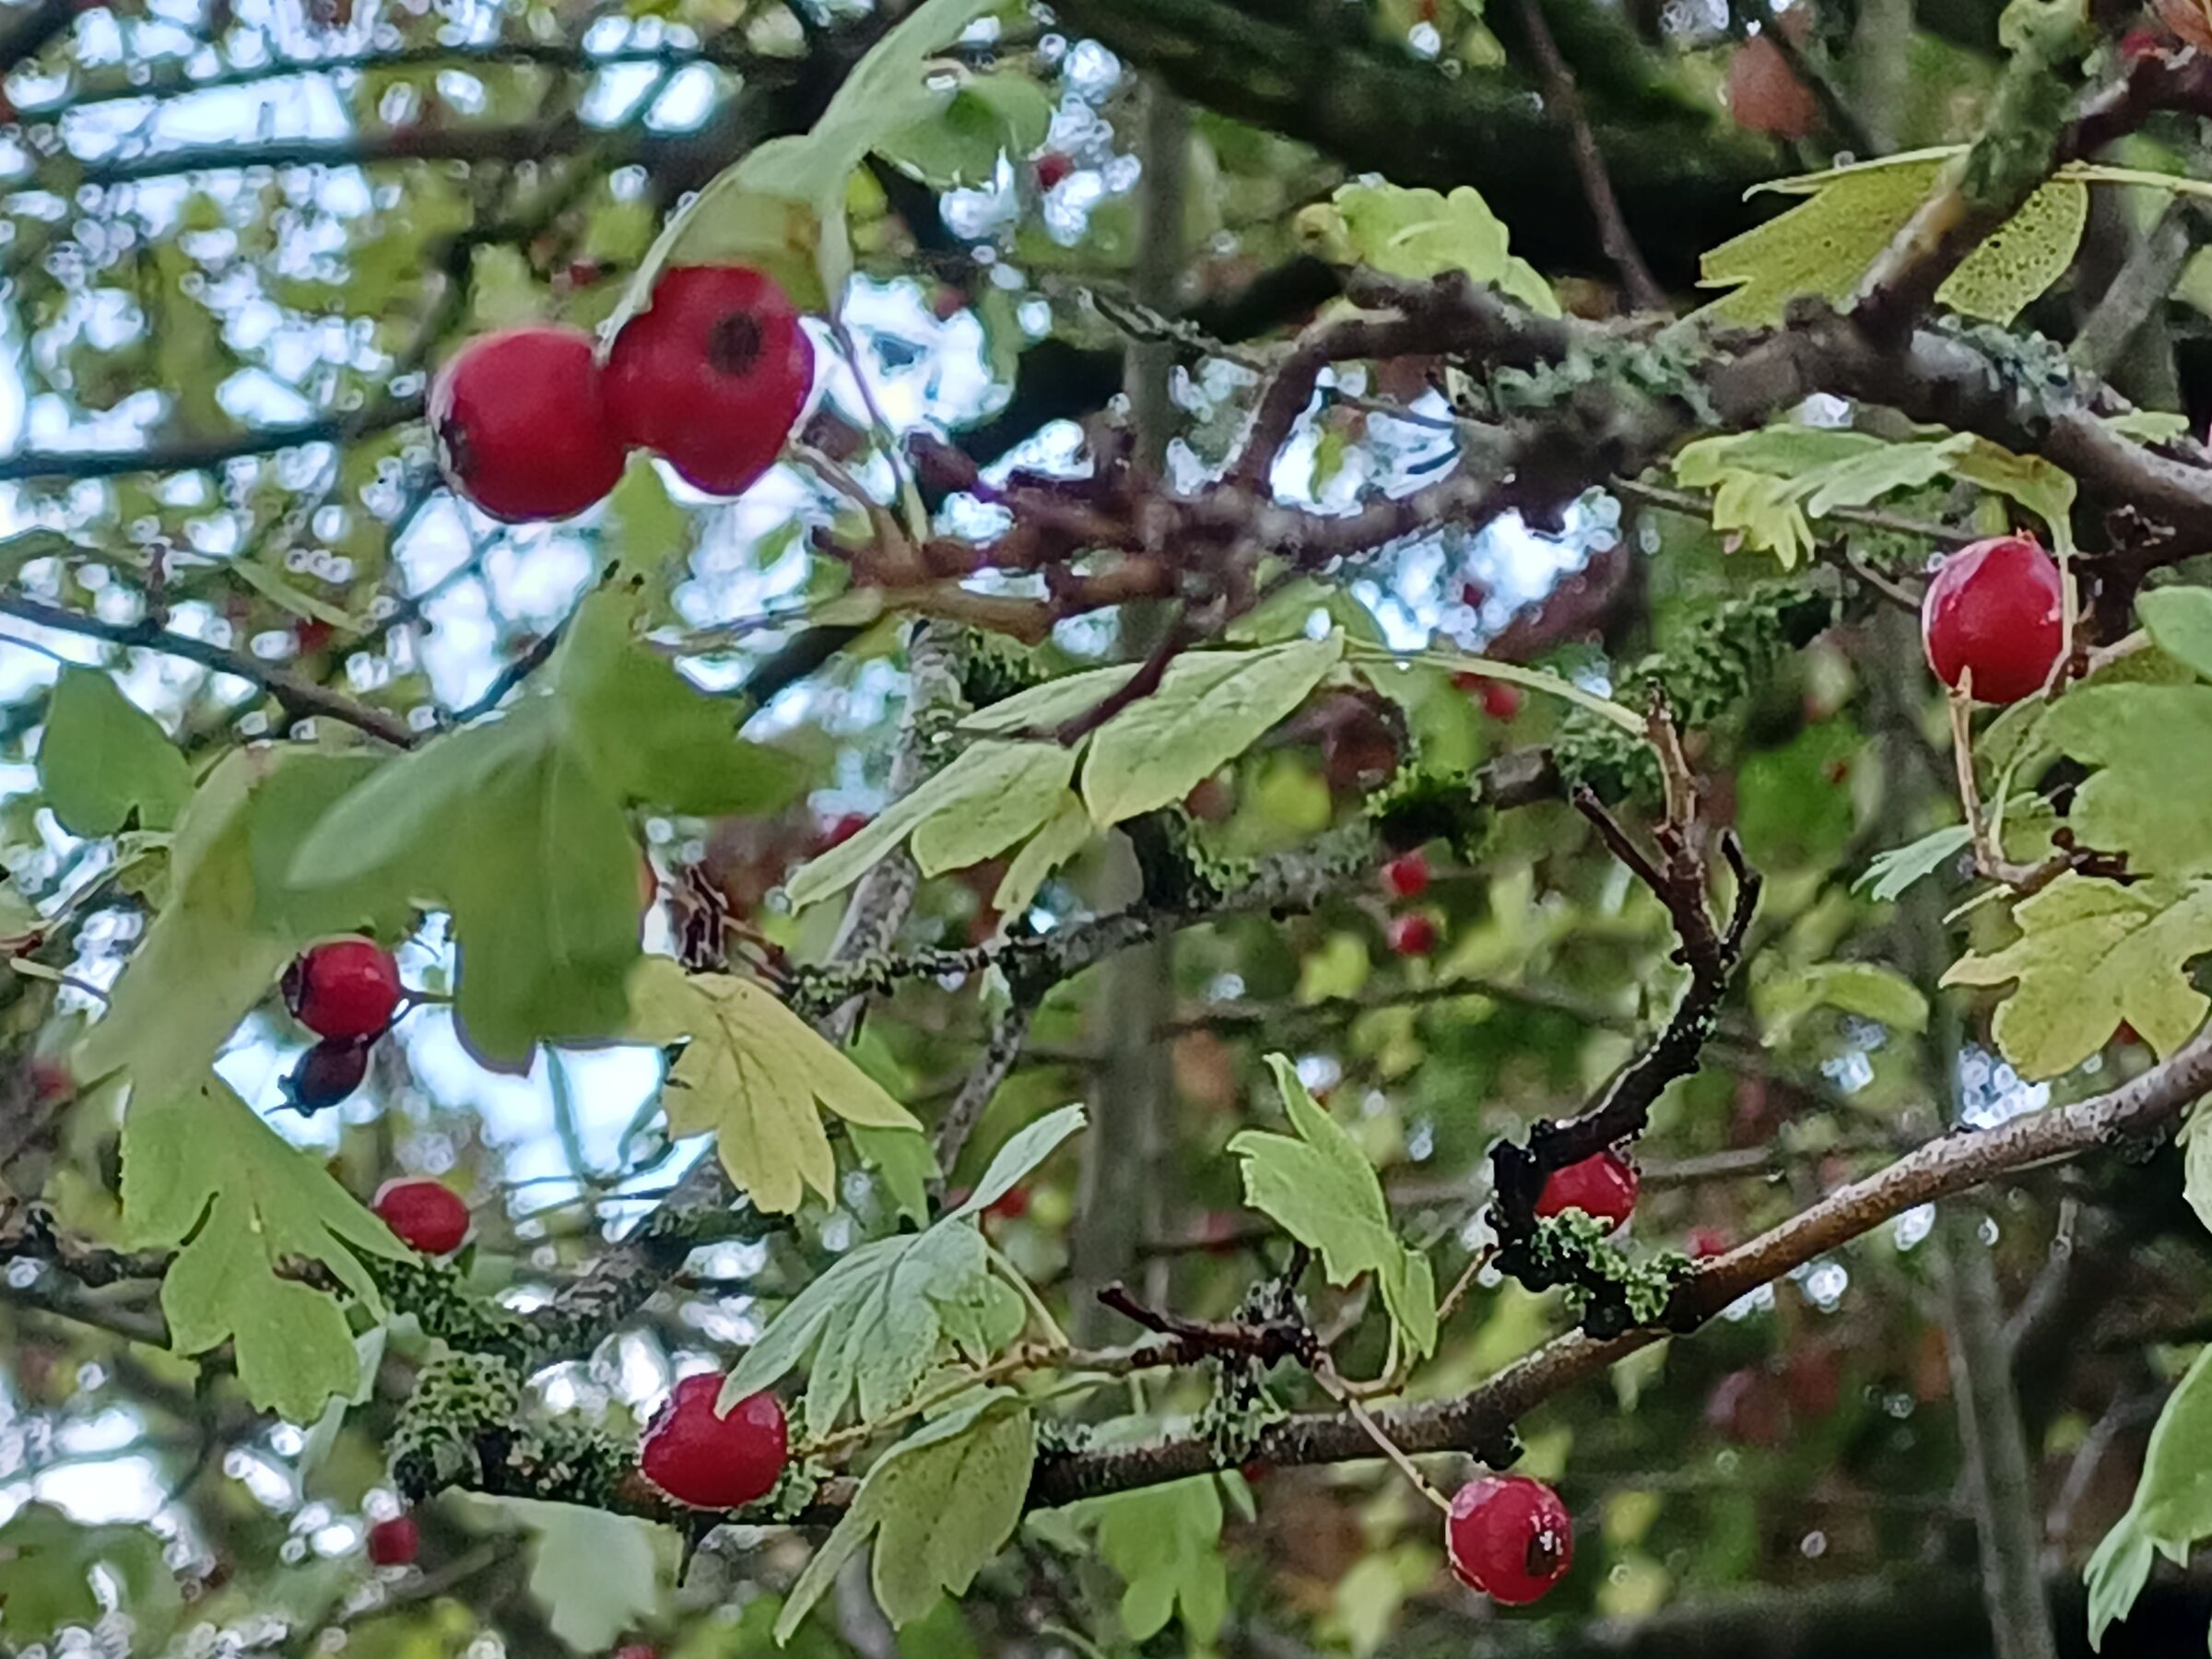 Autumn berries...